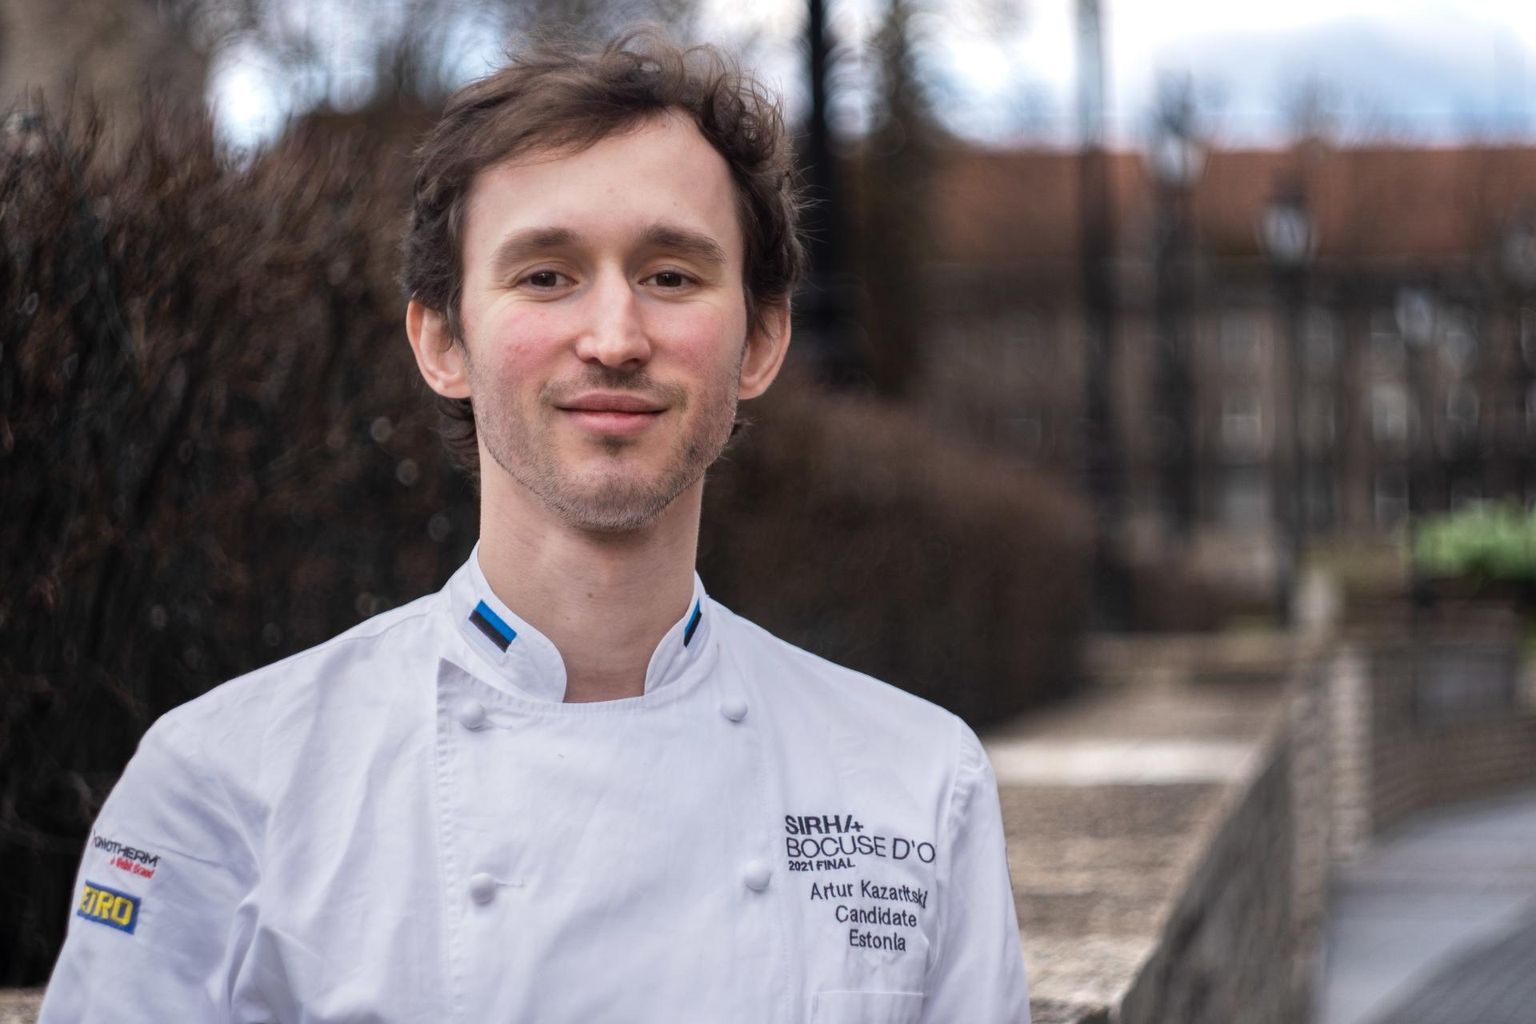 Artur Kazaritski käis äsja Tallinnas ja valmistas restoranis Gloria Bocuse d’Orist inspireeritud õhtusöögi. FOTO: Madis Veltman